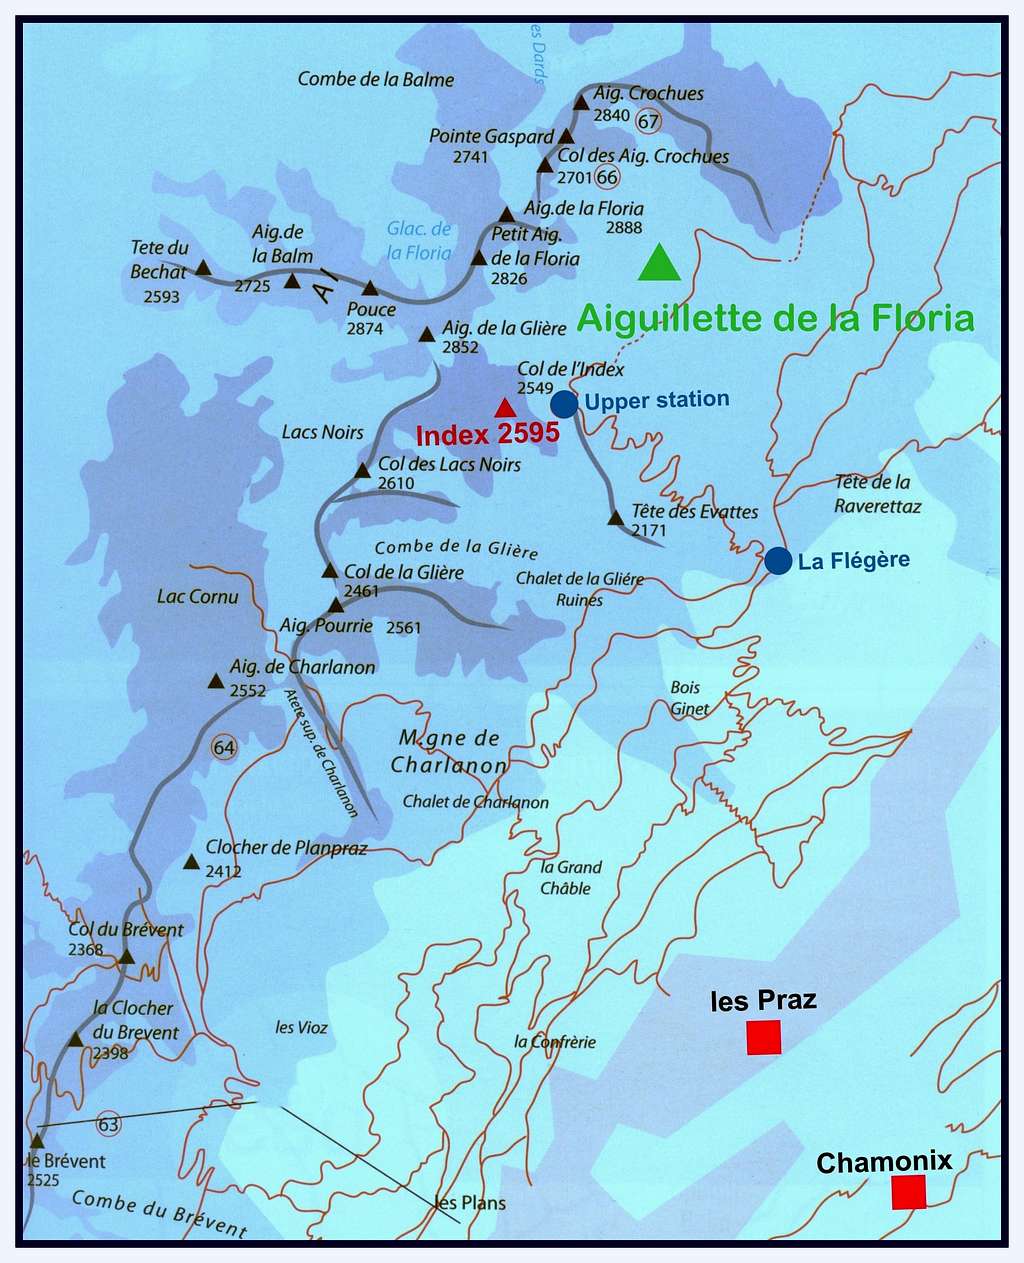 Aiguillette de la Floria  map